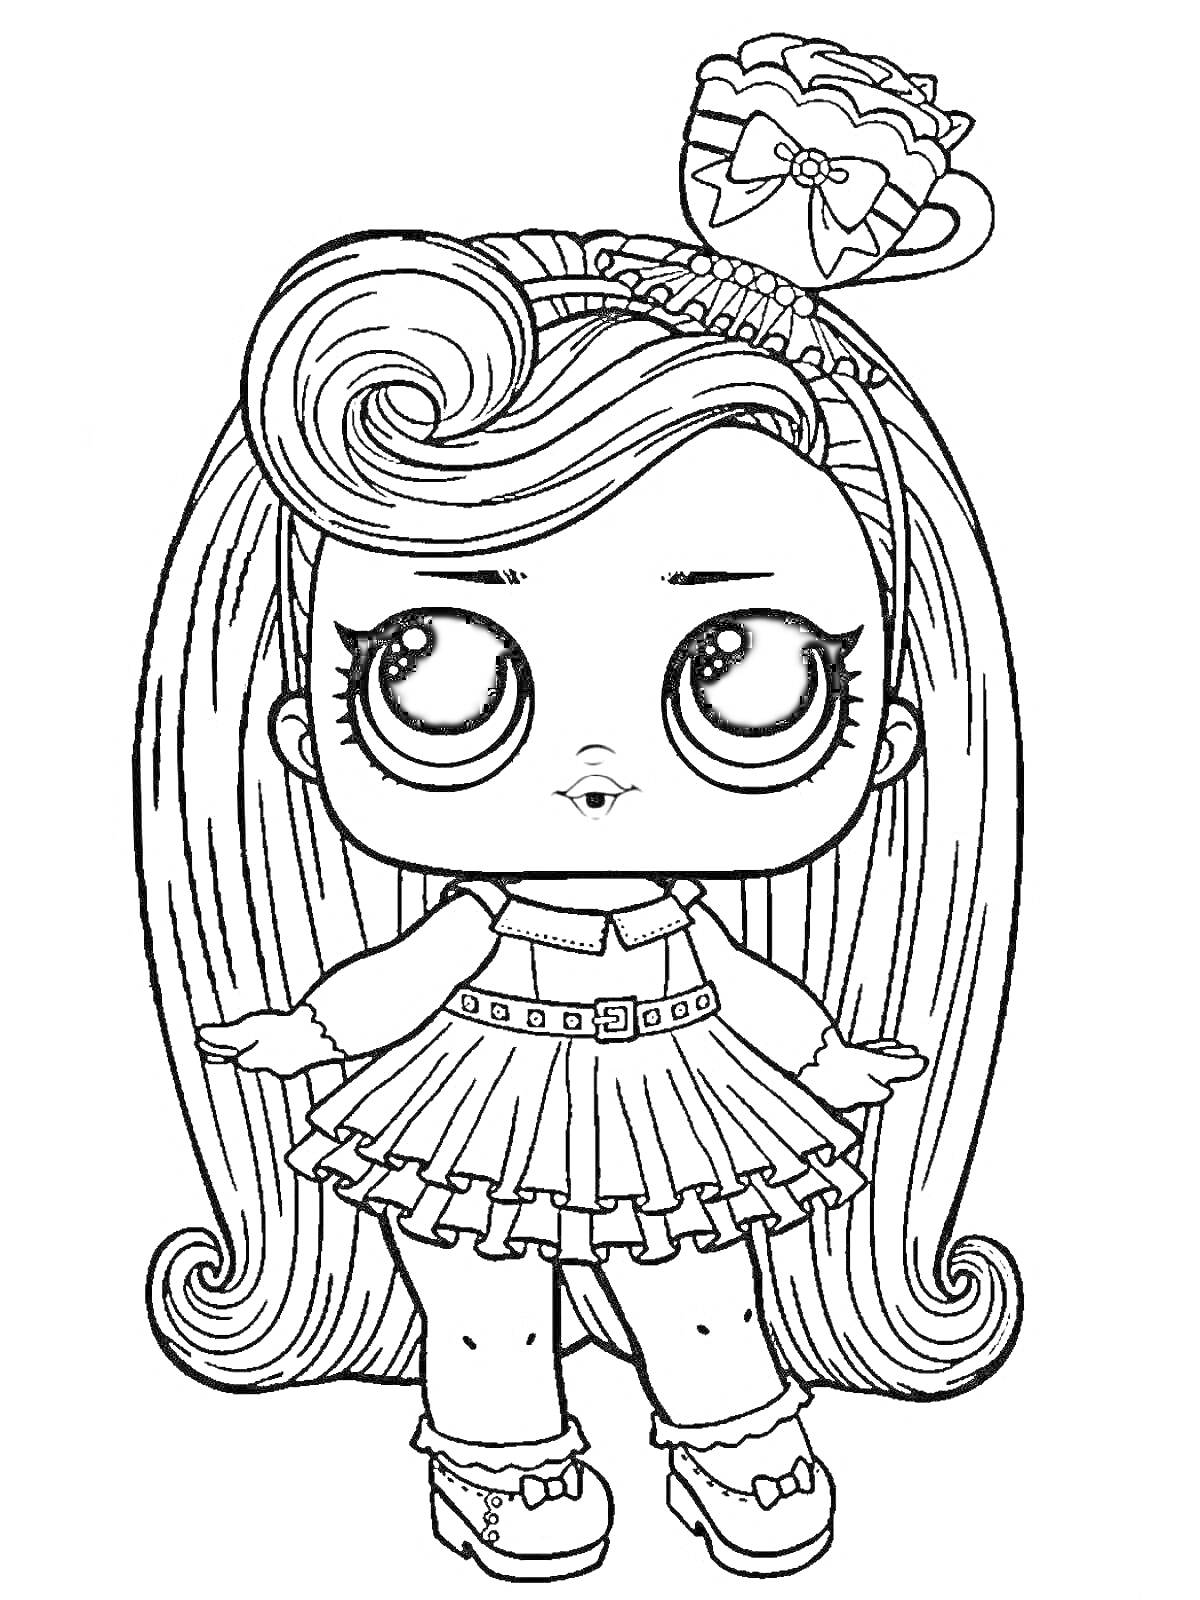 Раскраска кукла LOL с длинными волосами, ободком с бантом, в платье и туфлях